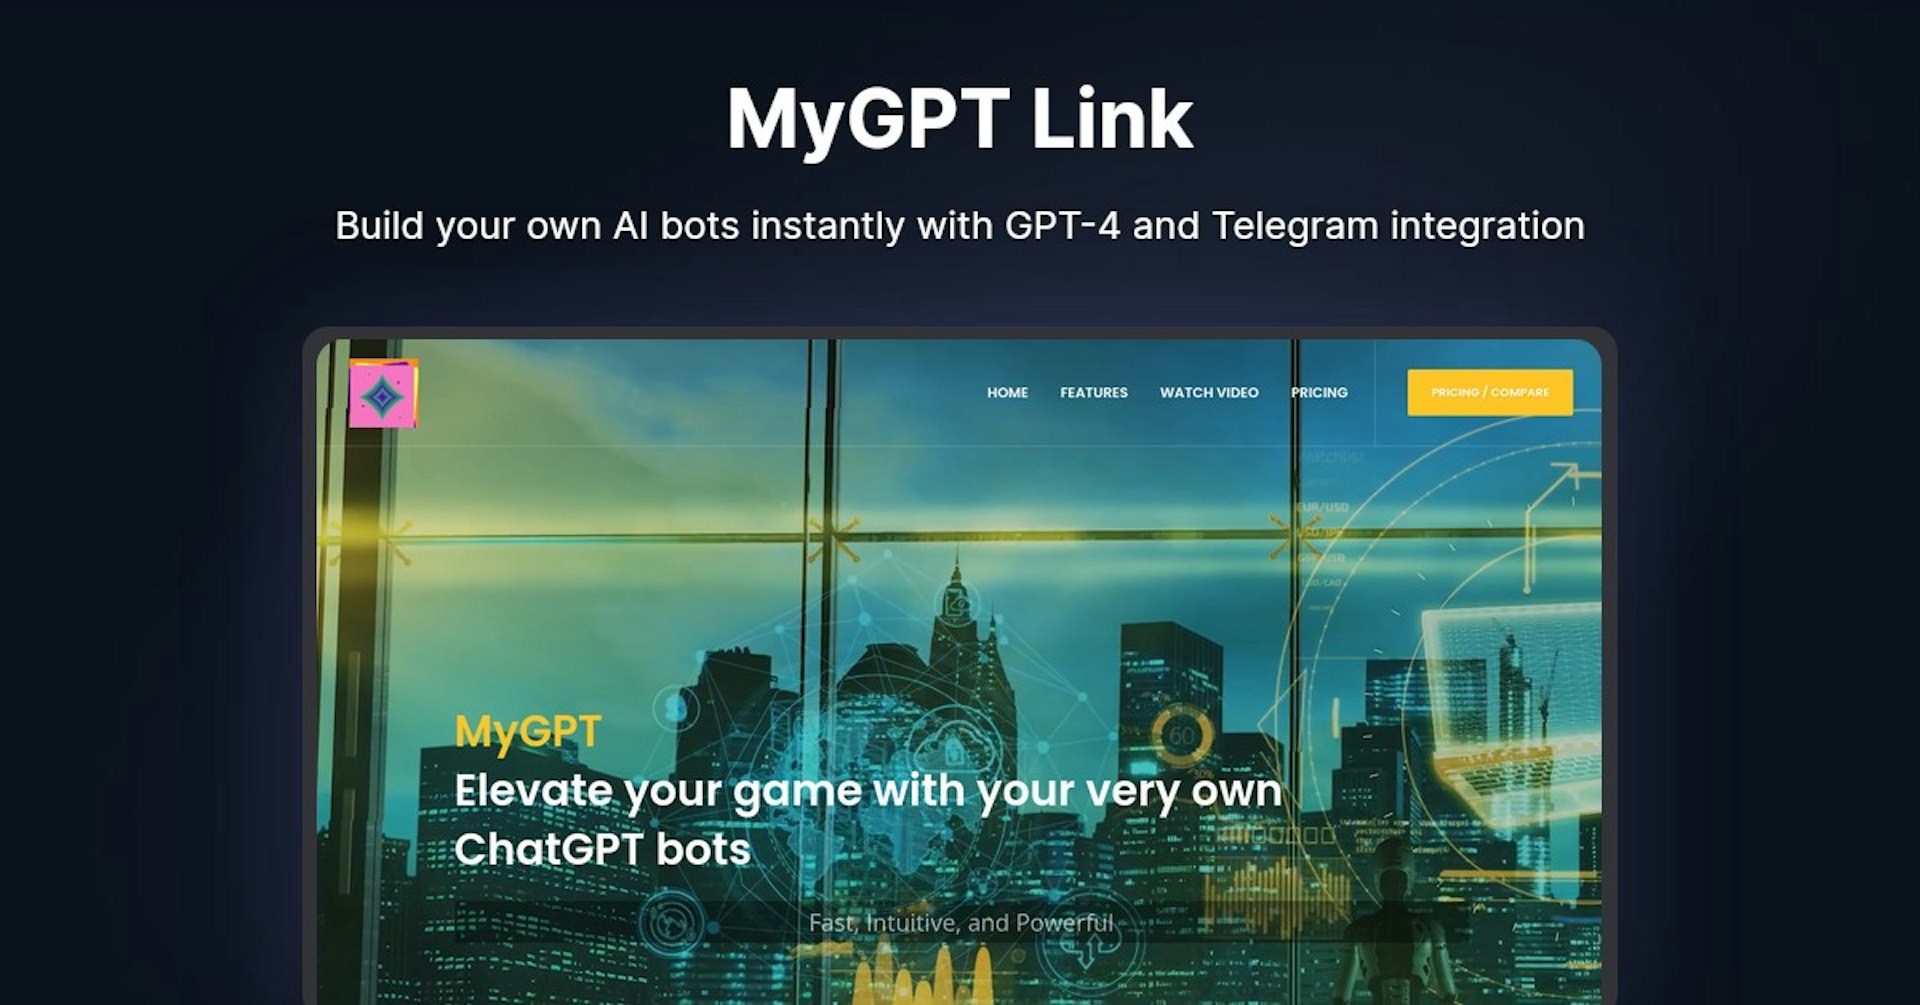 MyGPT Link